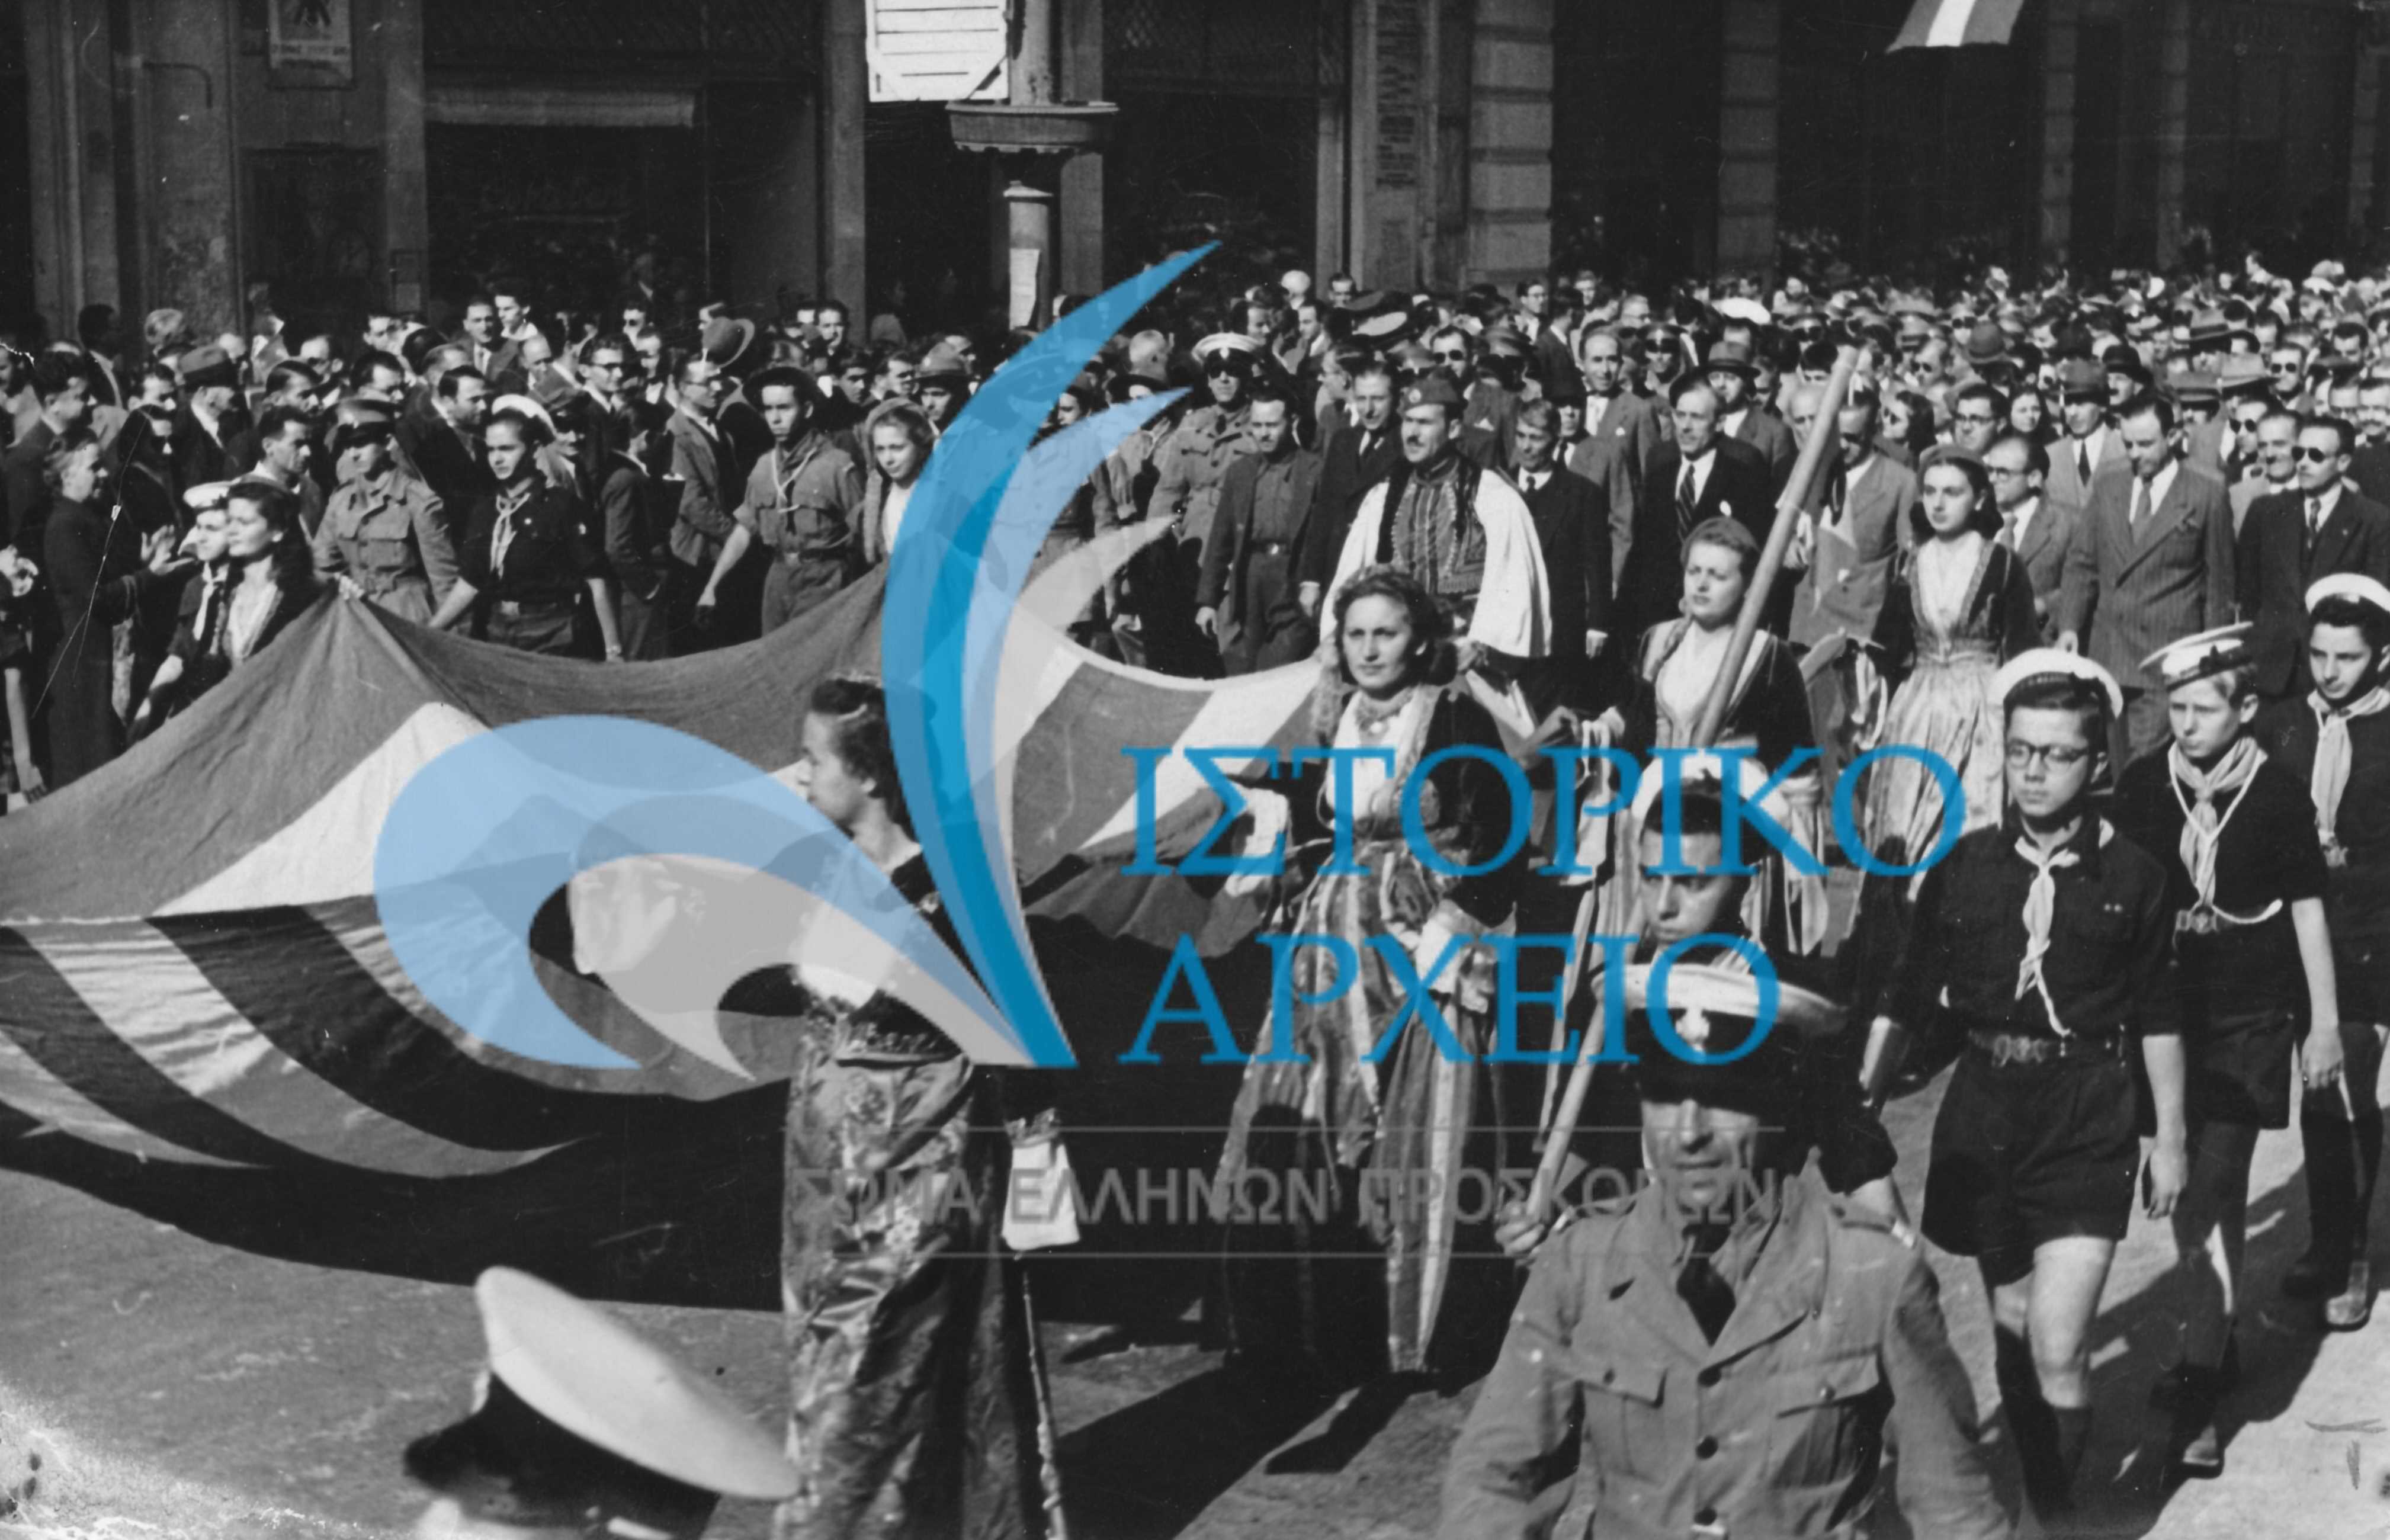 Πρόσκοποι και κοπέλες του Λυκείου Ελληνίδων στην οδό Μητροπόλεως κατά τους εορτασμούς για την Απελευθέρωση των Αθηνών από τα στρατεύματα κατοχής το 1946. Την πομπή ακολουθεί ο Δήμαρχος Αθηναίων Αριστείδης Σκληρός.